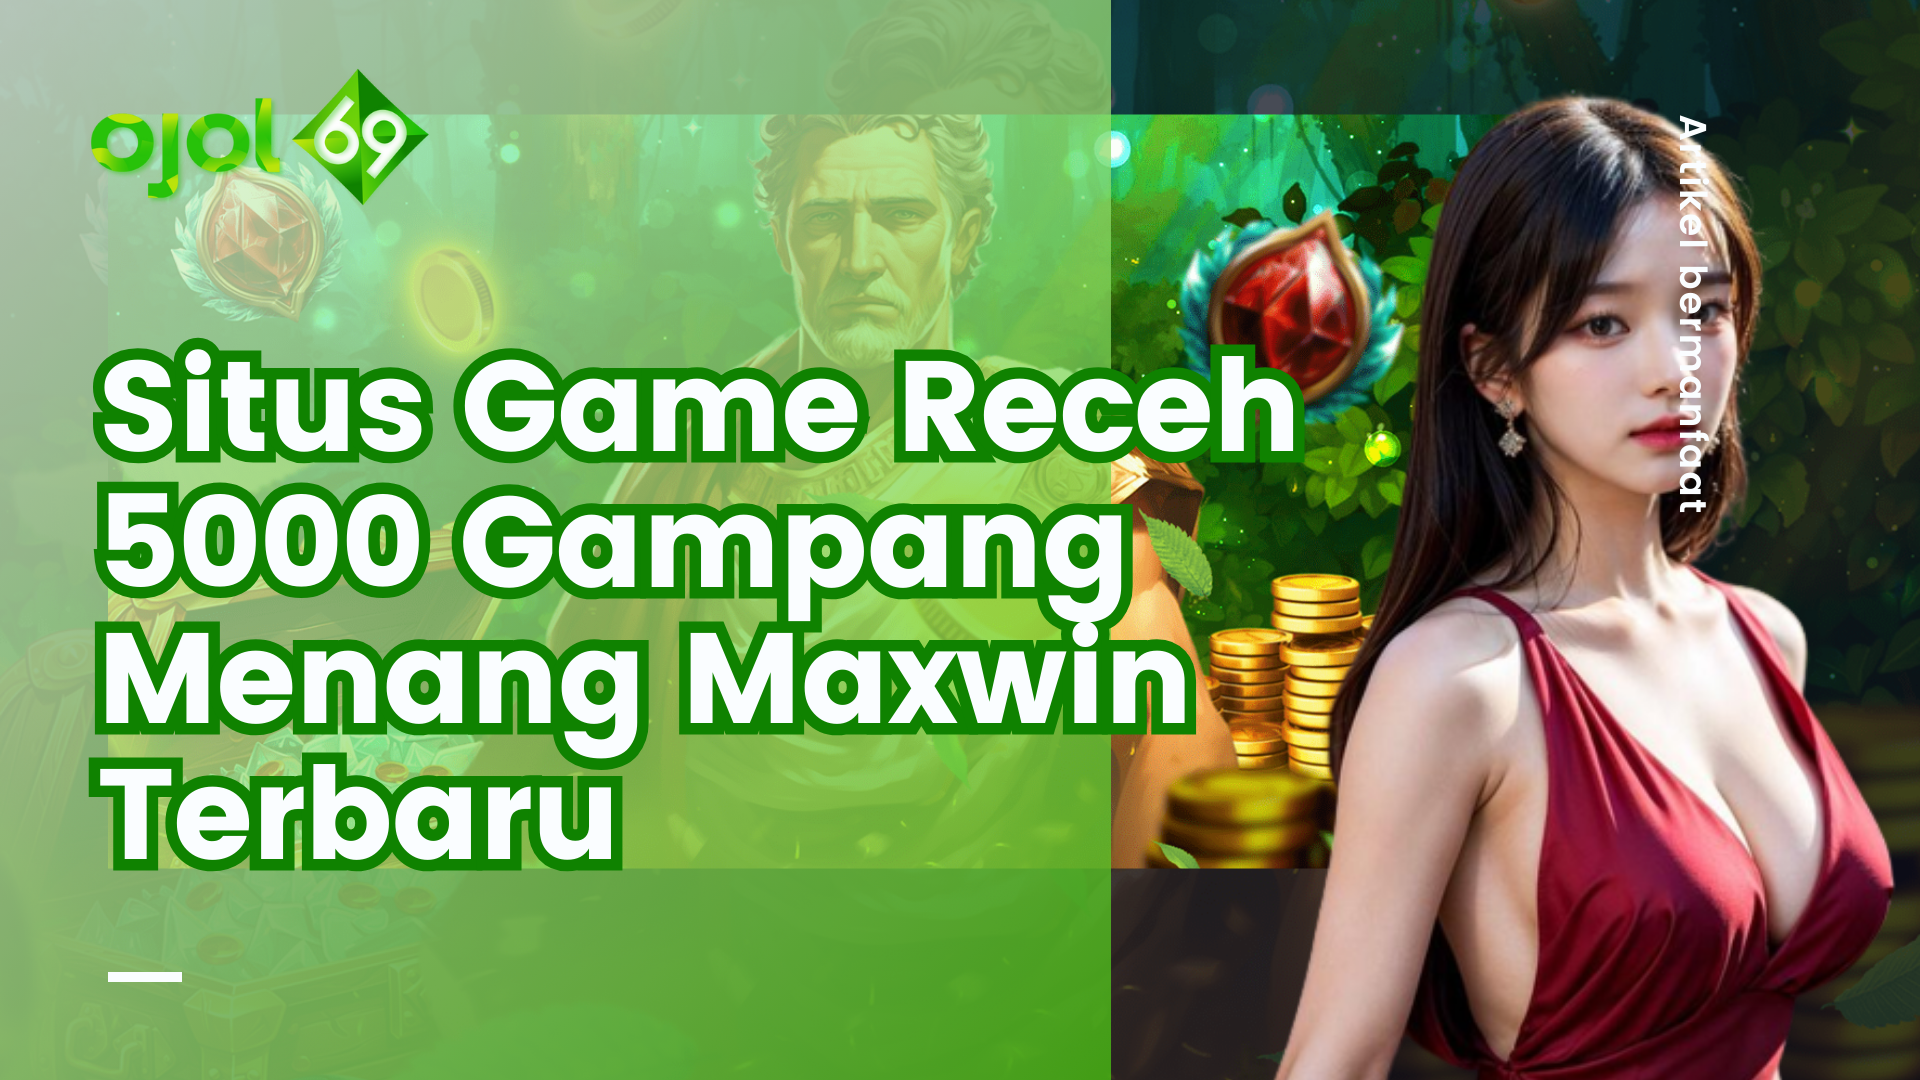 Situs Game Receh 5000 Gampang Menang Maxwin Terbaru